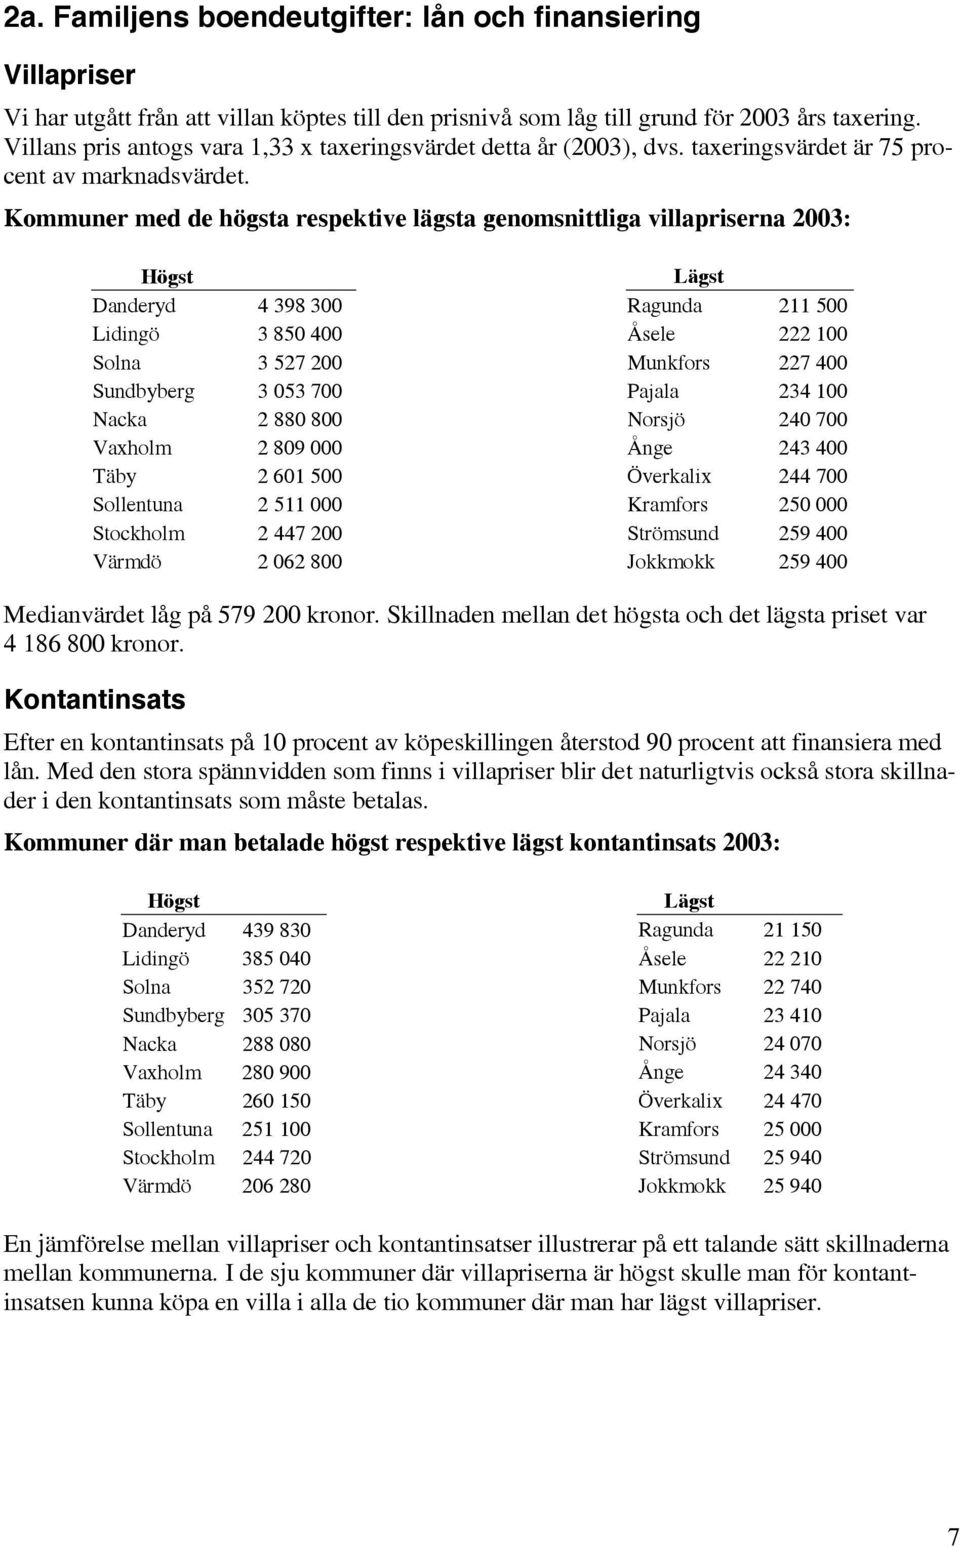 Kommuner med de högsta respektive lägsta genomsnittliga villapriserna 2003: Högst Danderyd 4 398 300 Lidingö 3 850 400 Solna 3 527 200 Sundbyberg 3 053 700 Nacka 2 880 800 Vaxholm 2 809 000 Täby 2